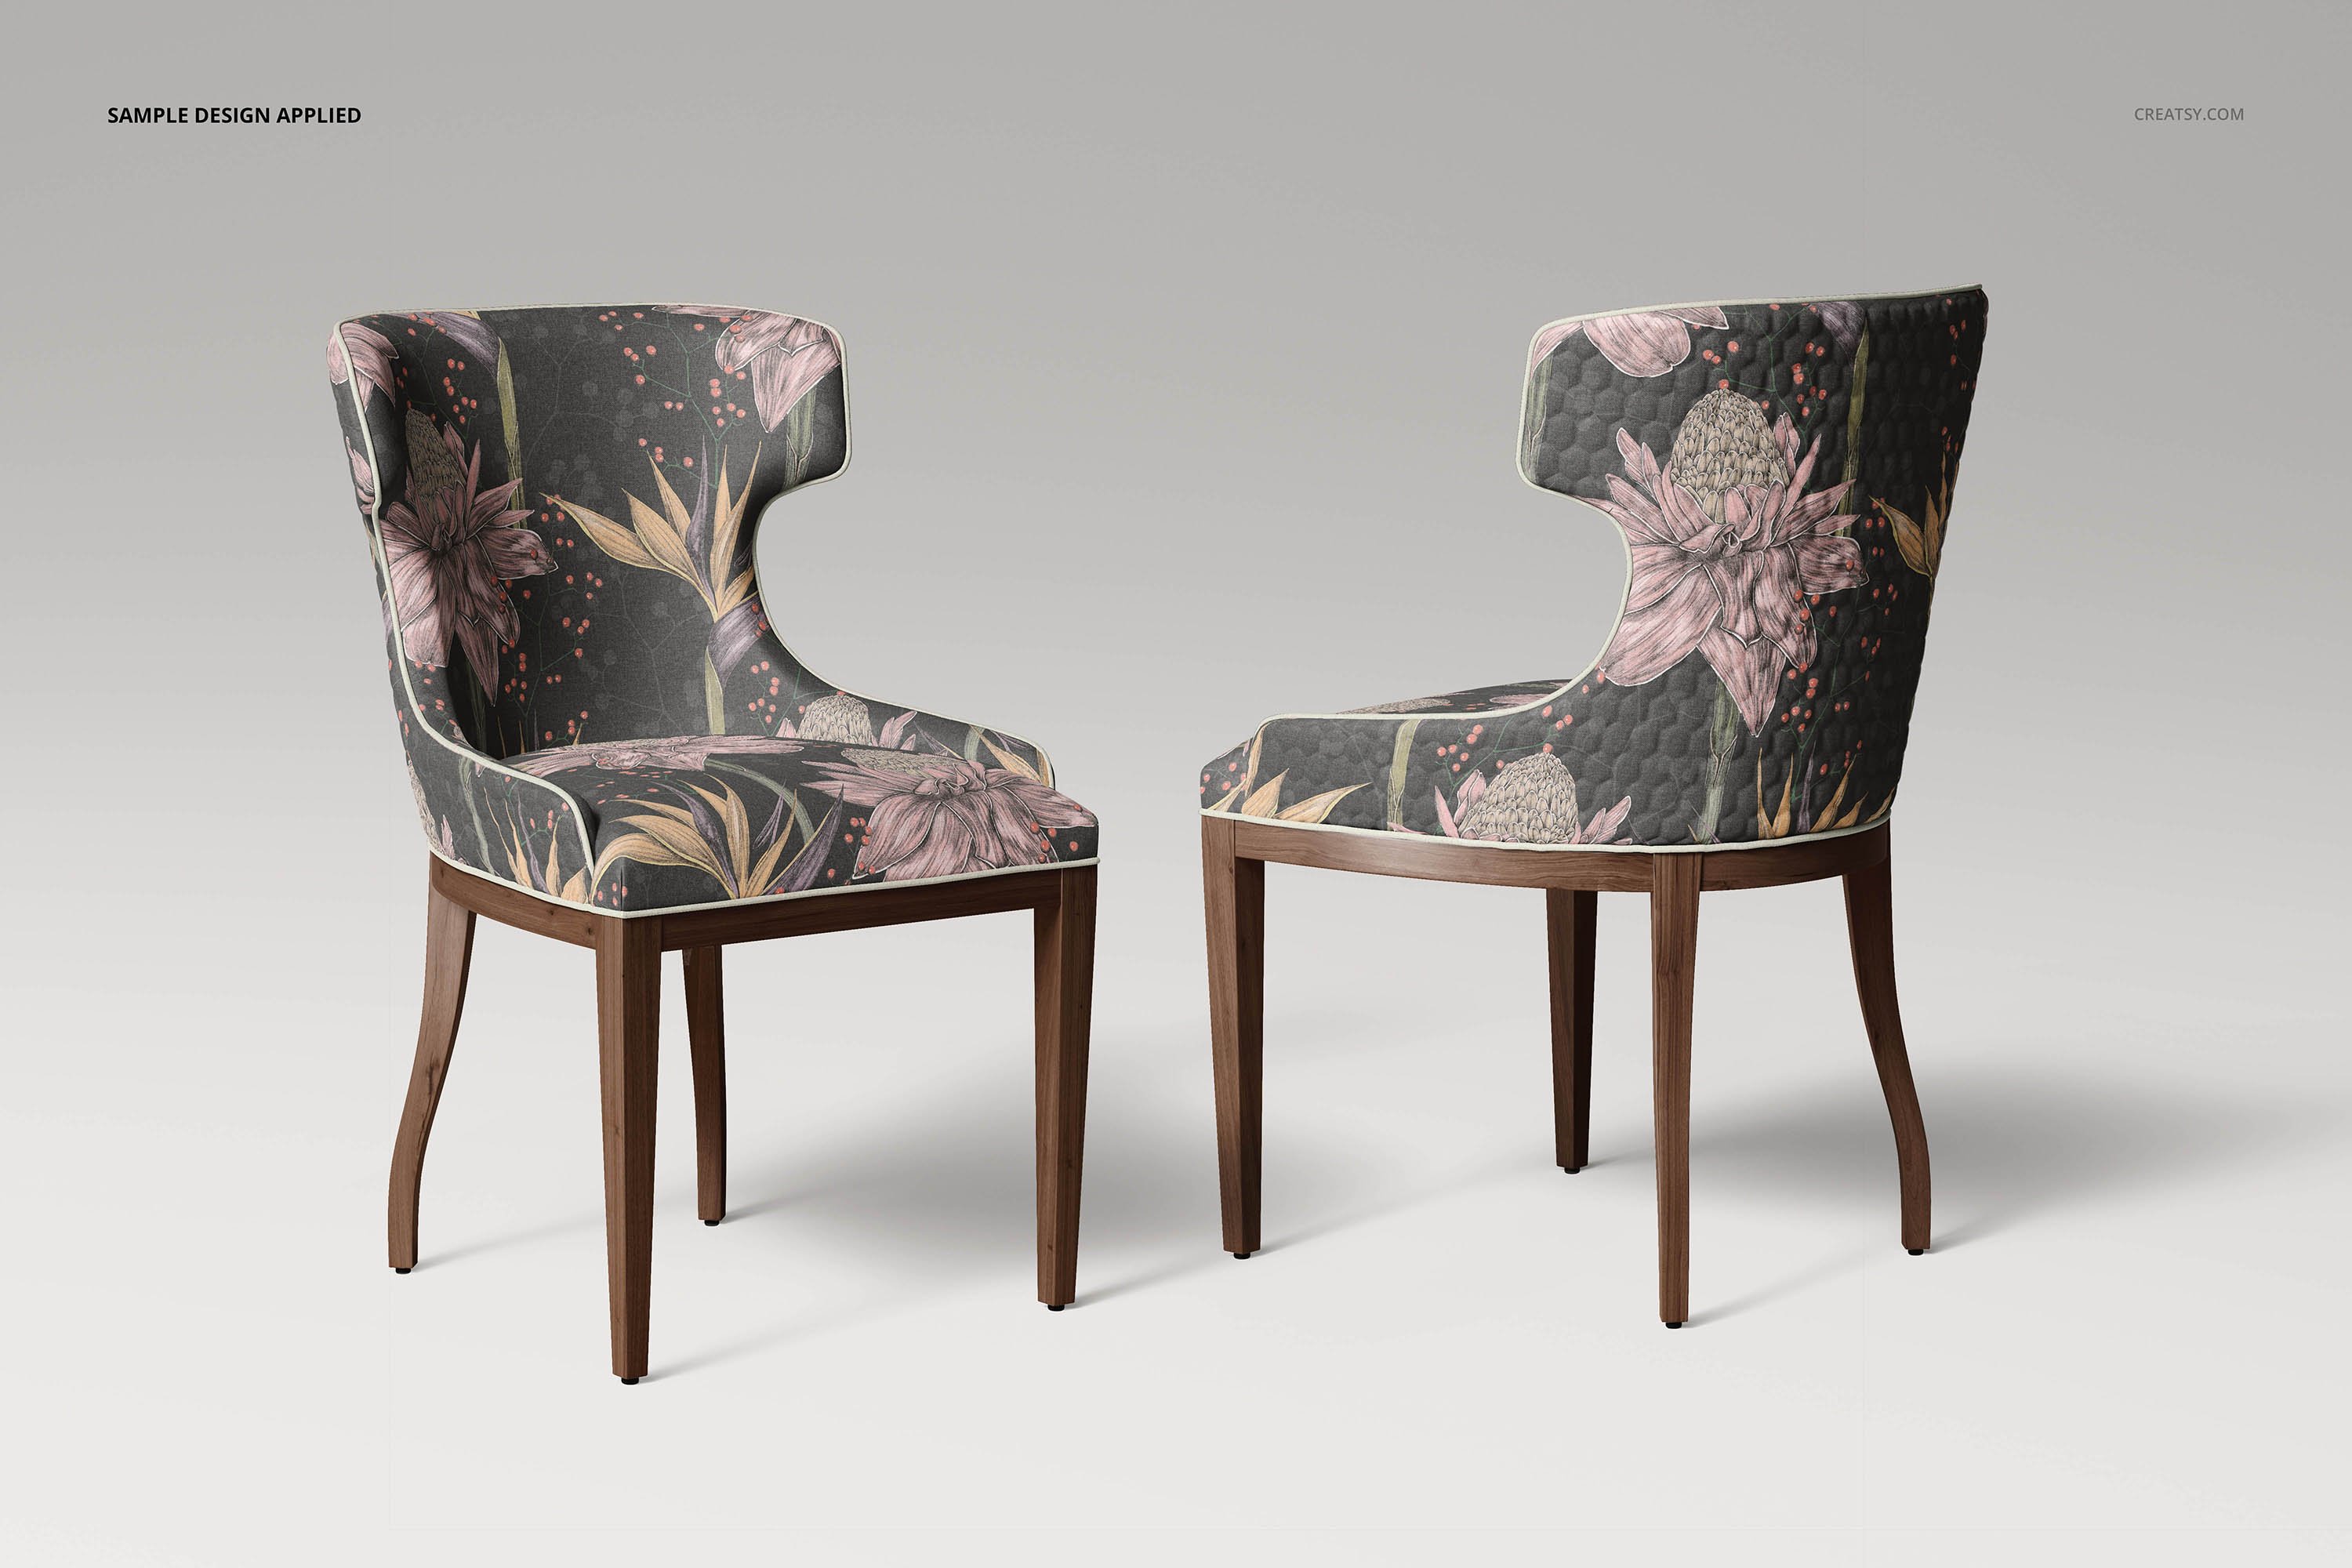 时尚室内餐厅椅子外观设计展示贴图样机模板合集diningroomchairmock